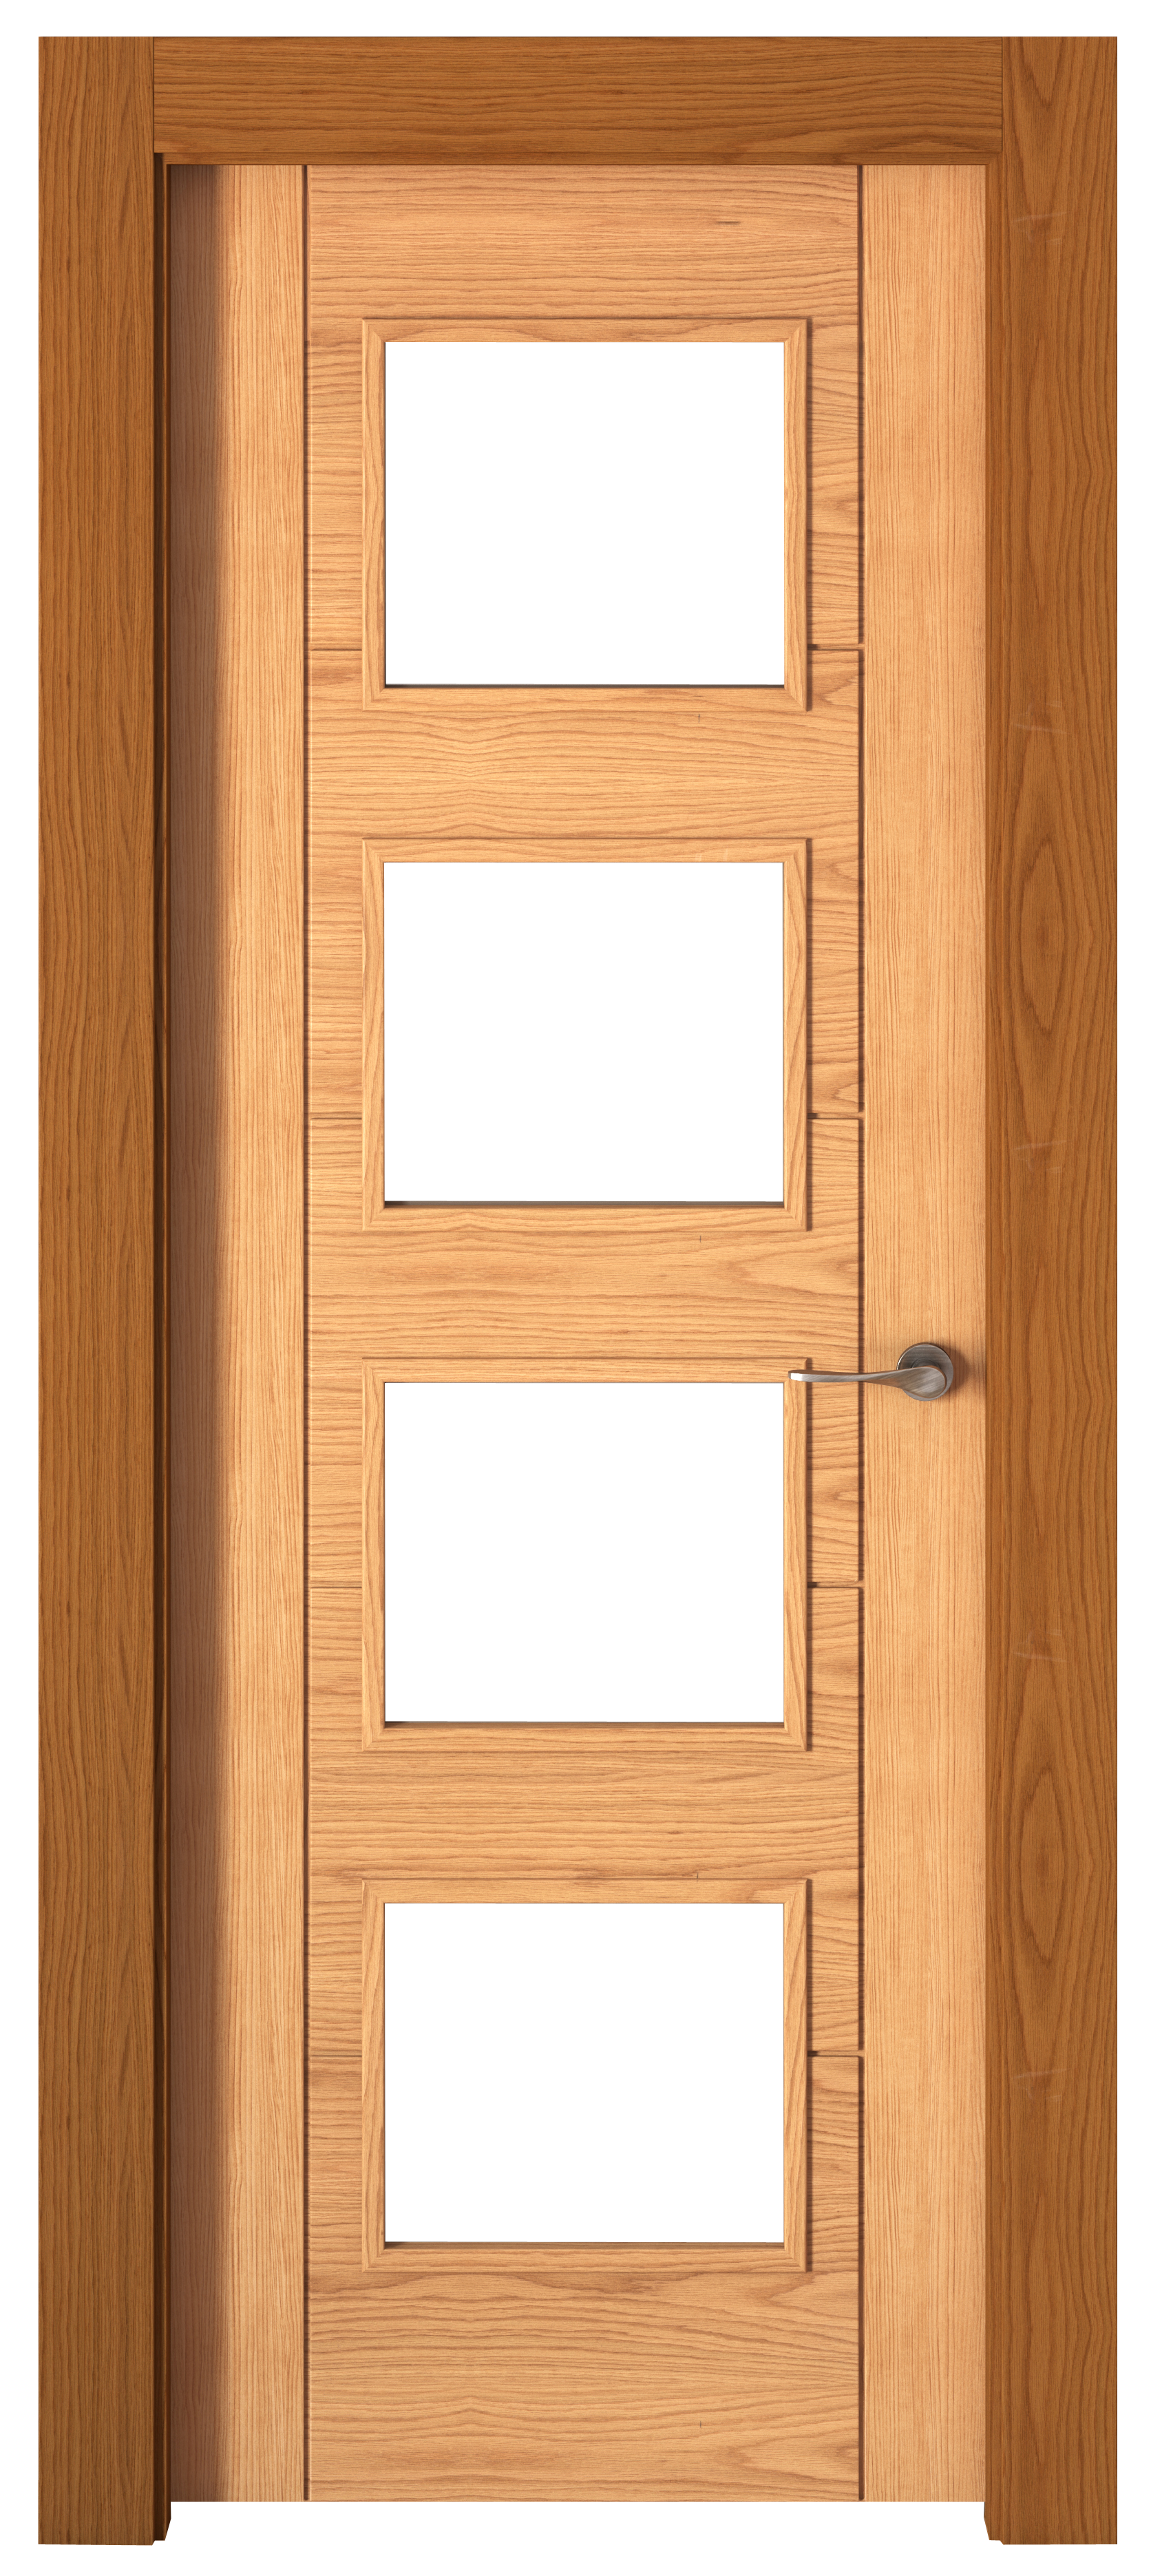 Puerta noruega roble apertura izquierda con cristal 82.5cm